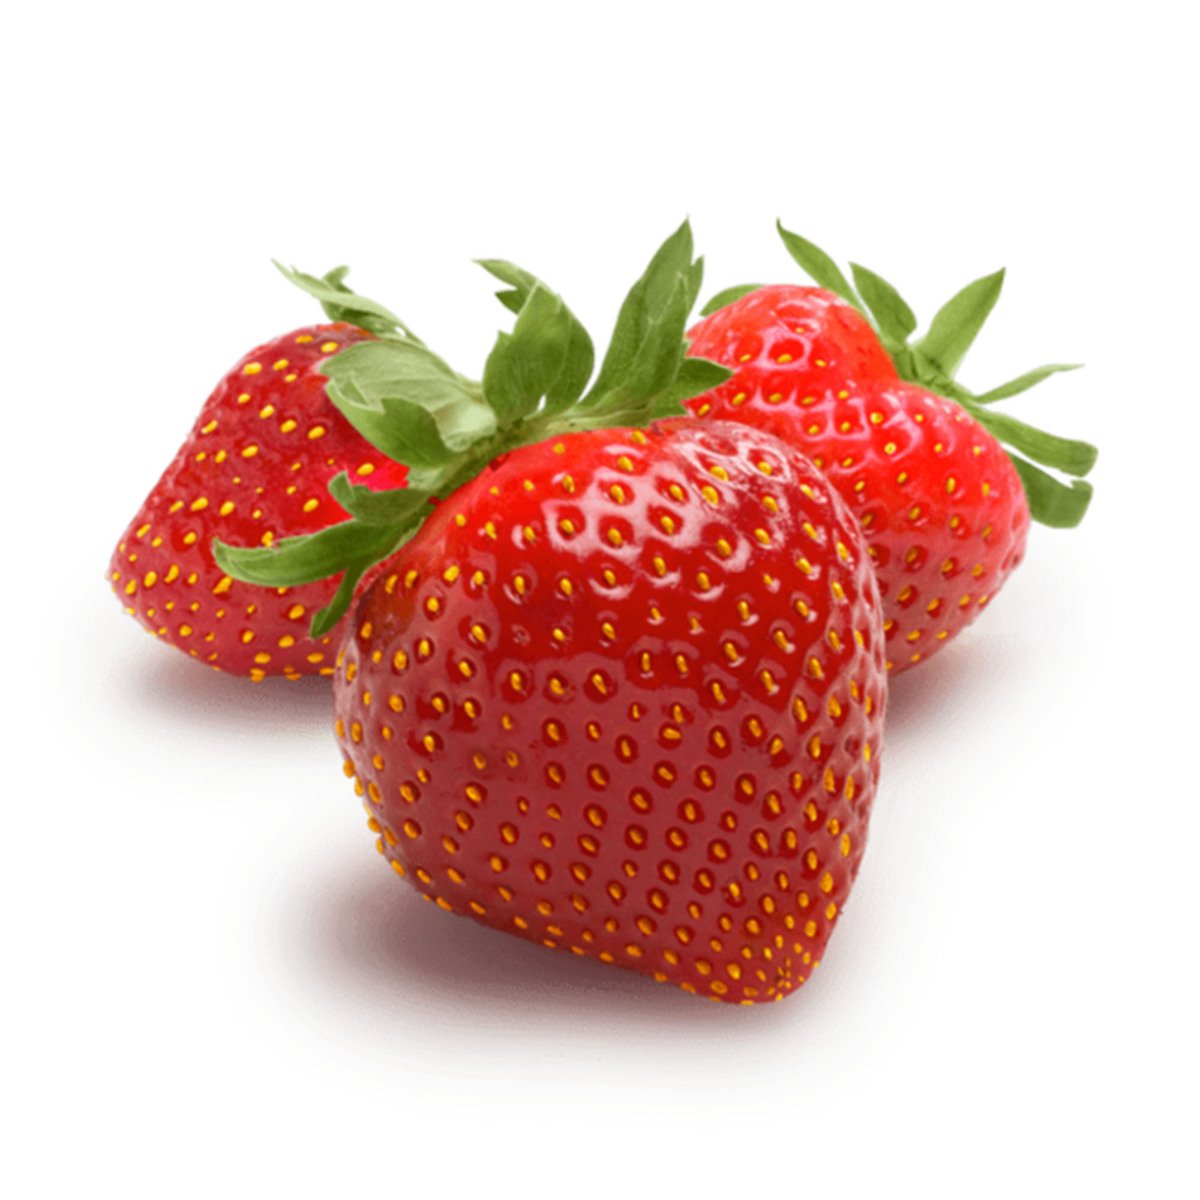 Fresh Strawberry Jumbo USA 1 pkt